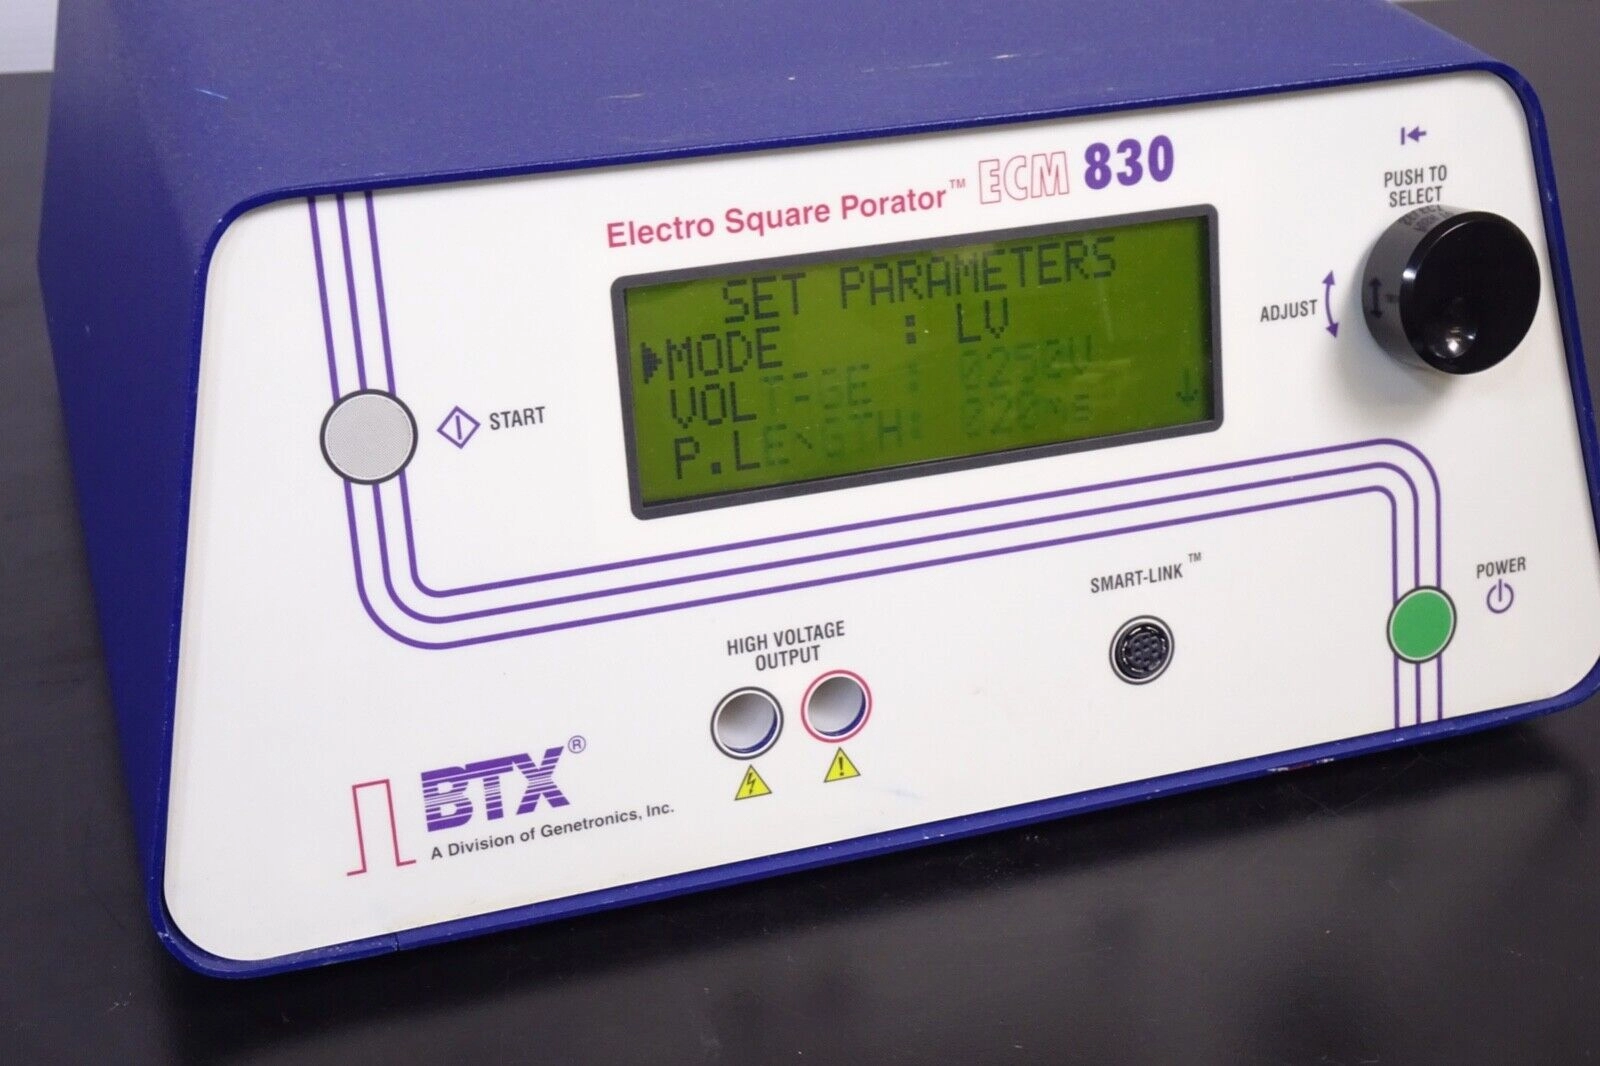 BTX Electro Square Porator ECM 830